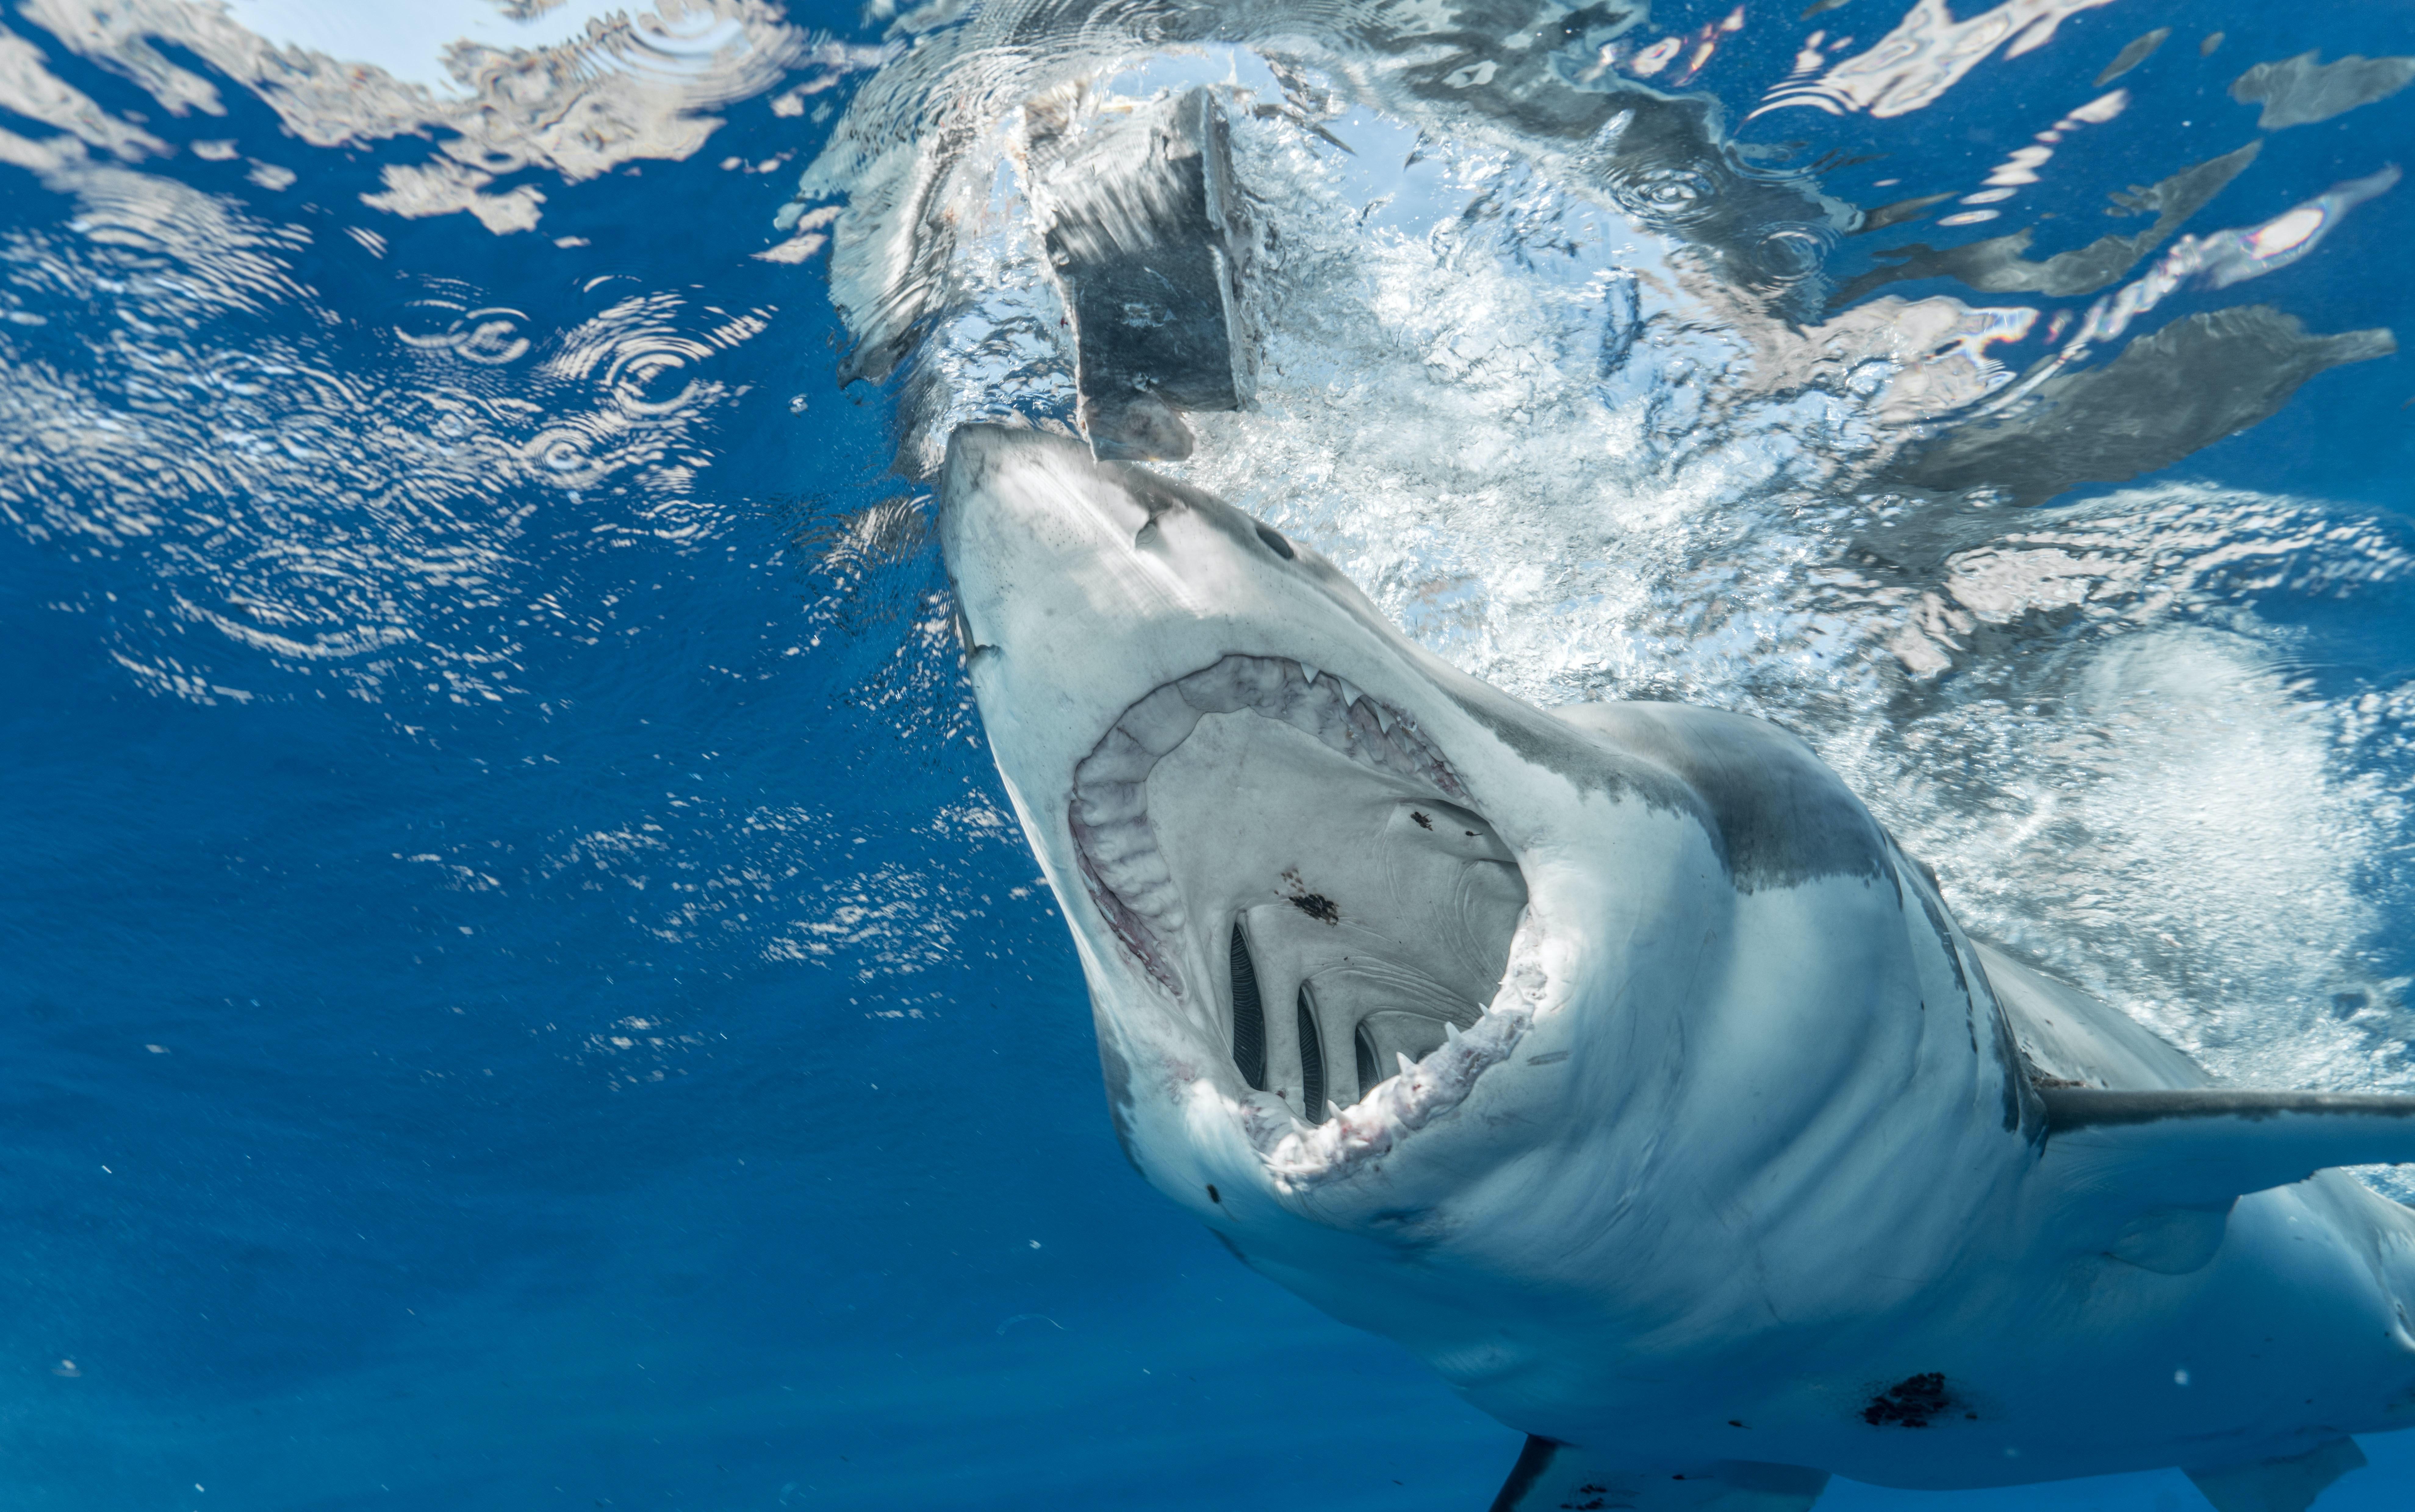 Are bonnet sharks dangerous? 